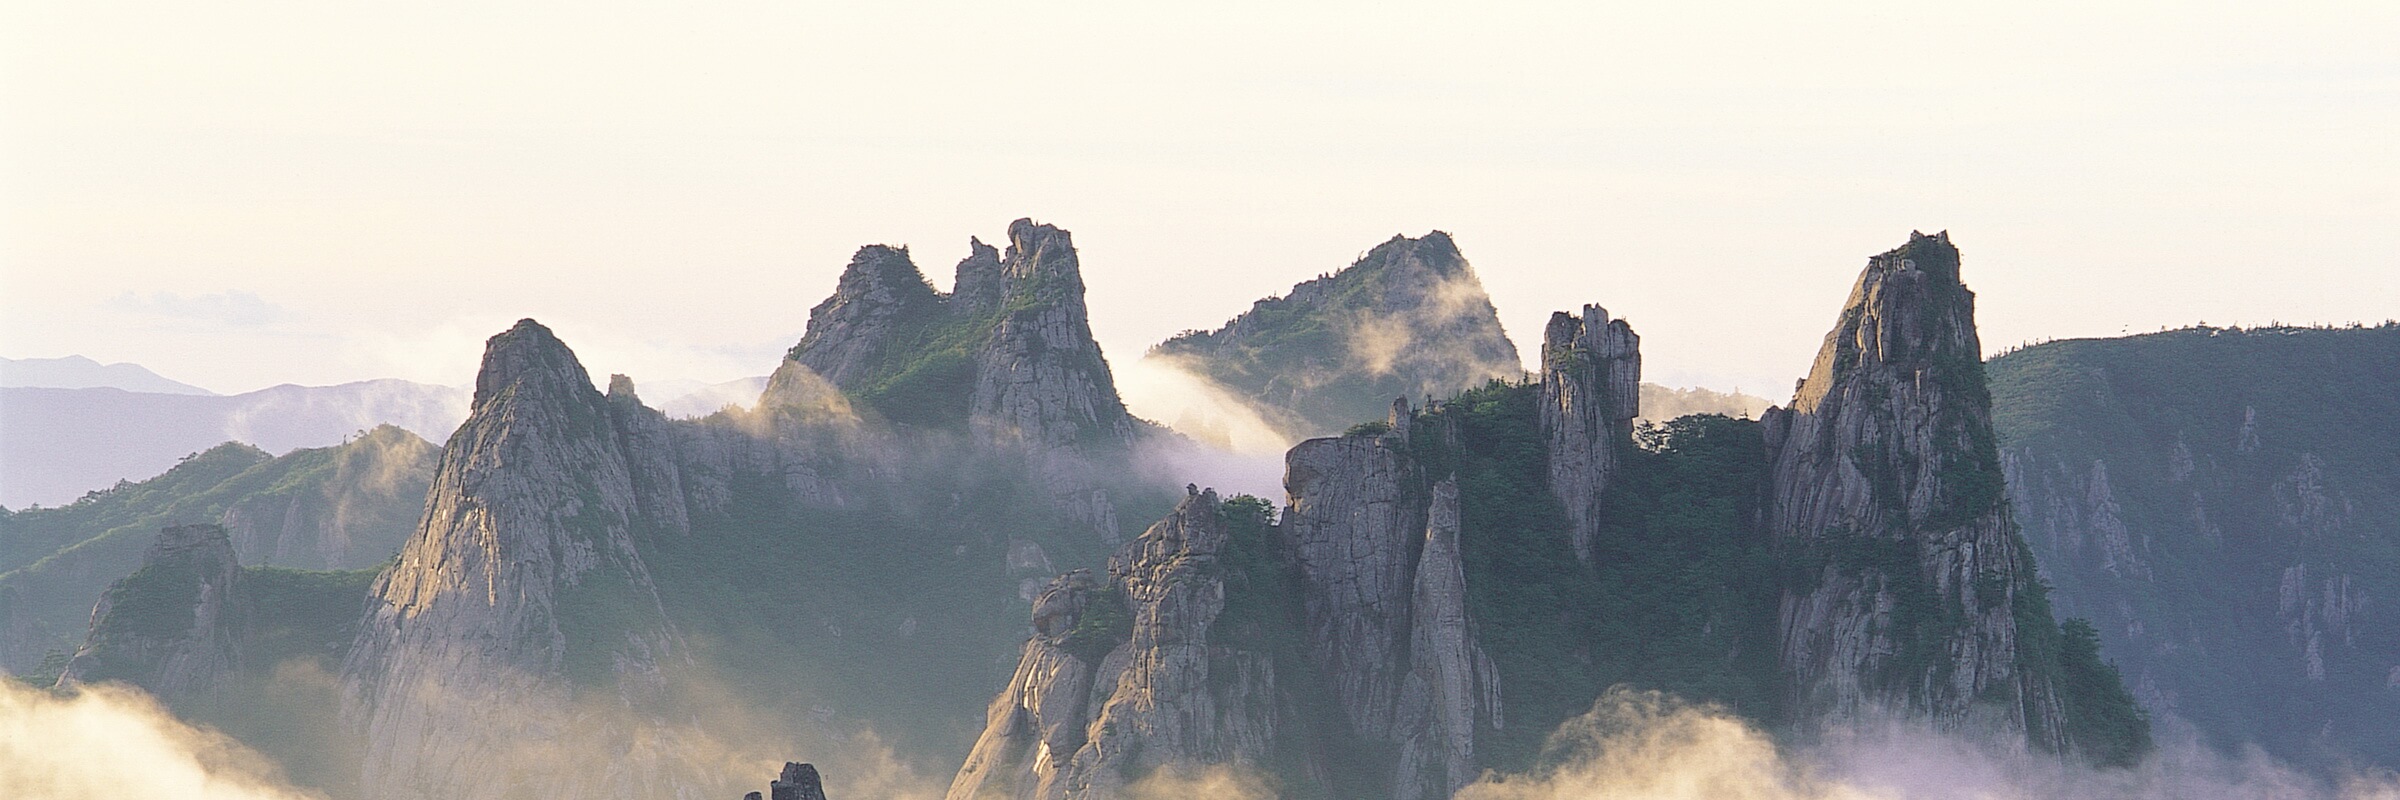 Der Seoraksan im Taebaek-Gebirge ist vor allem für seine zerklüftete Felslandschaft bekannt. Mit 1708 m ist er dritthöchste Berg Südkoreas.